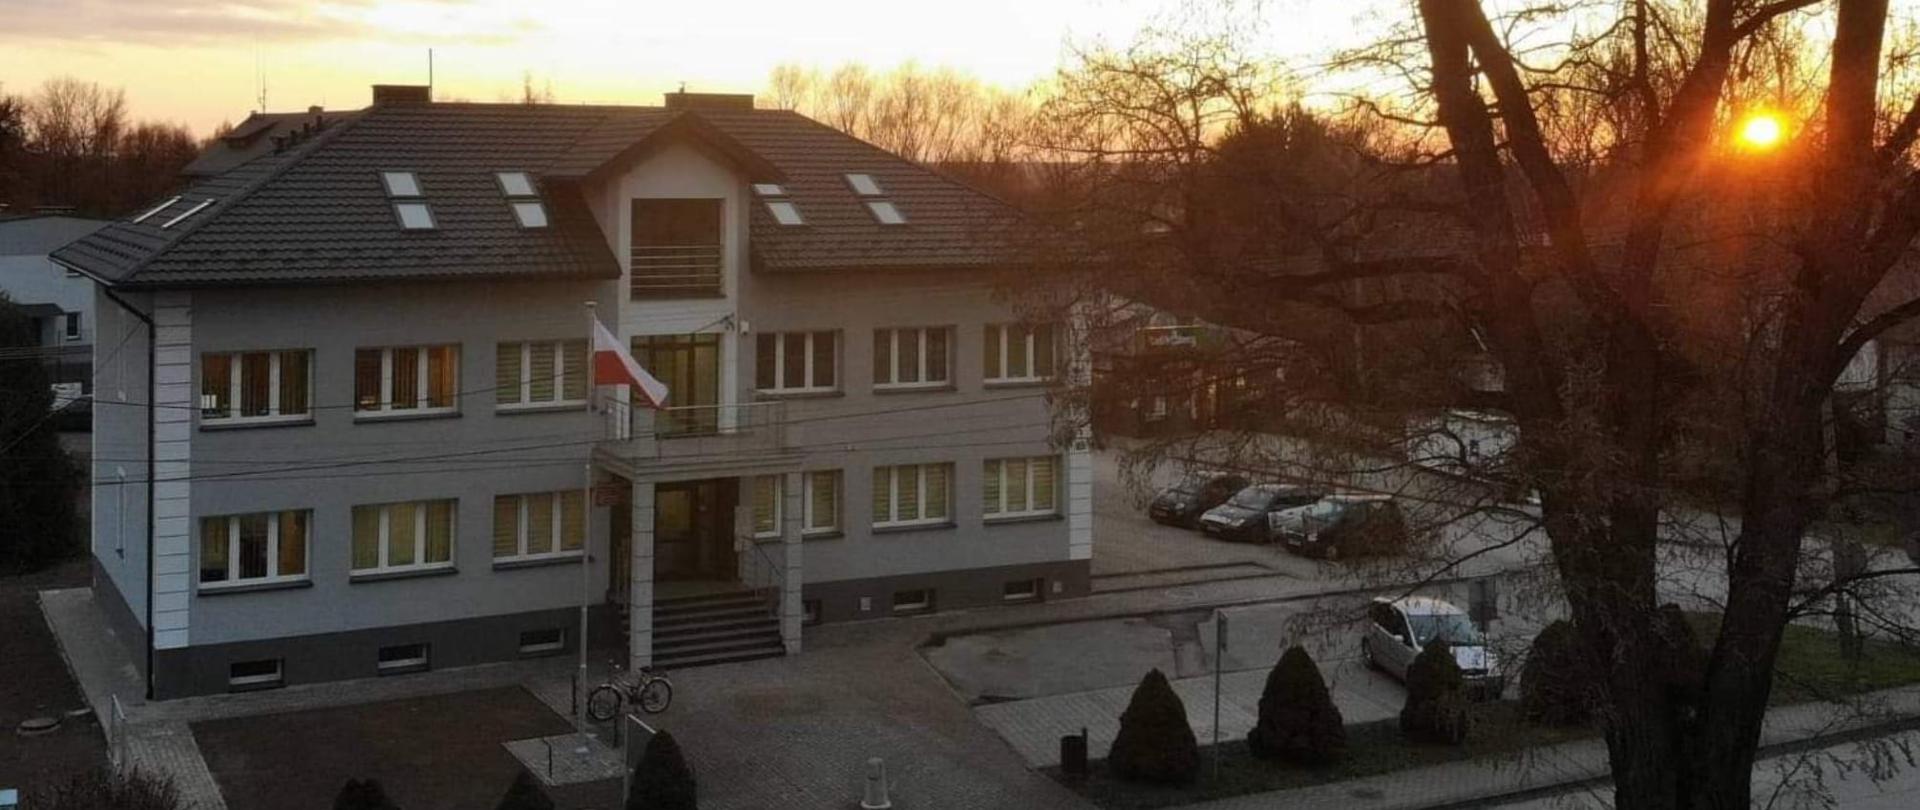 zdjęcie przedstawia widok budynku urzędu gminy os strony frontowej po zakończeniu inwestycji